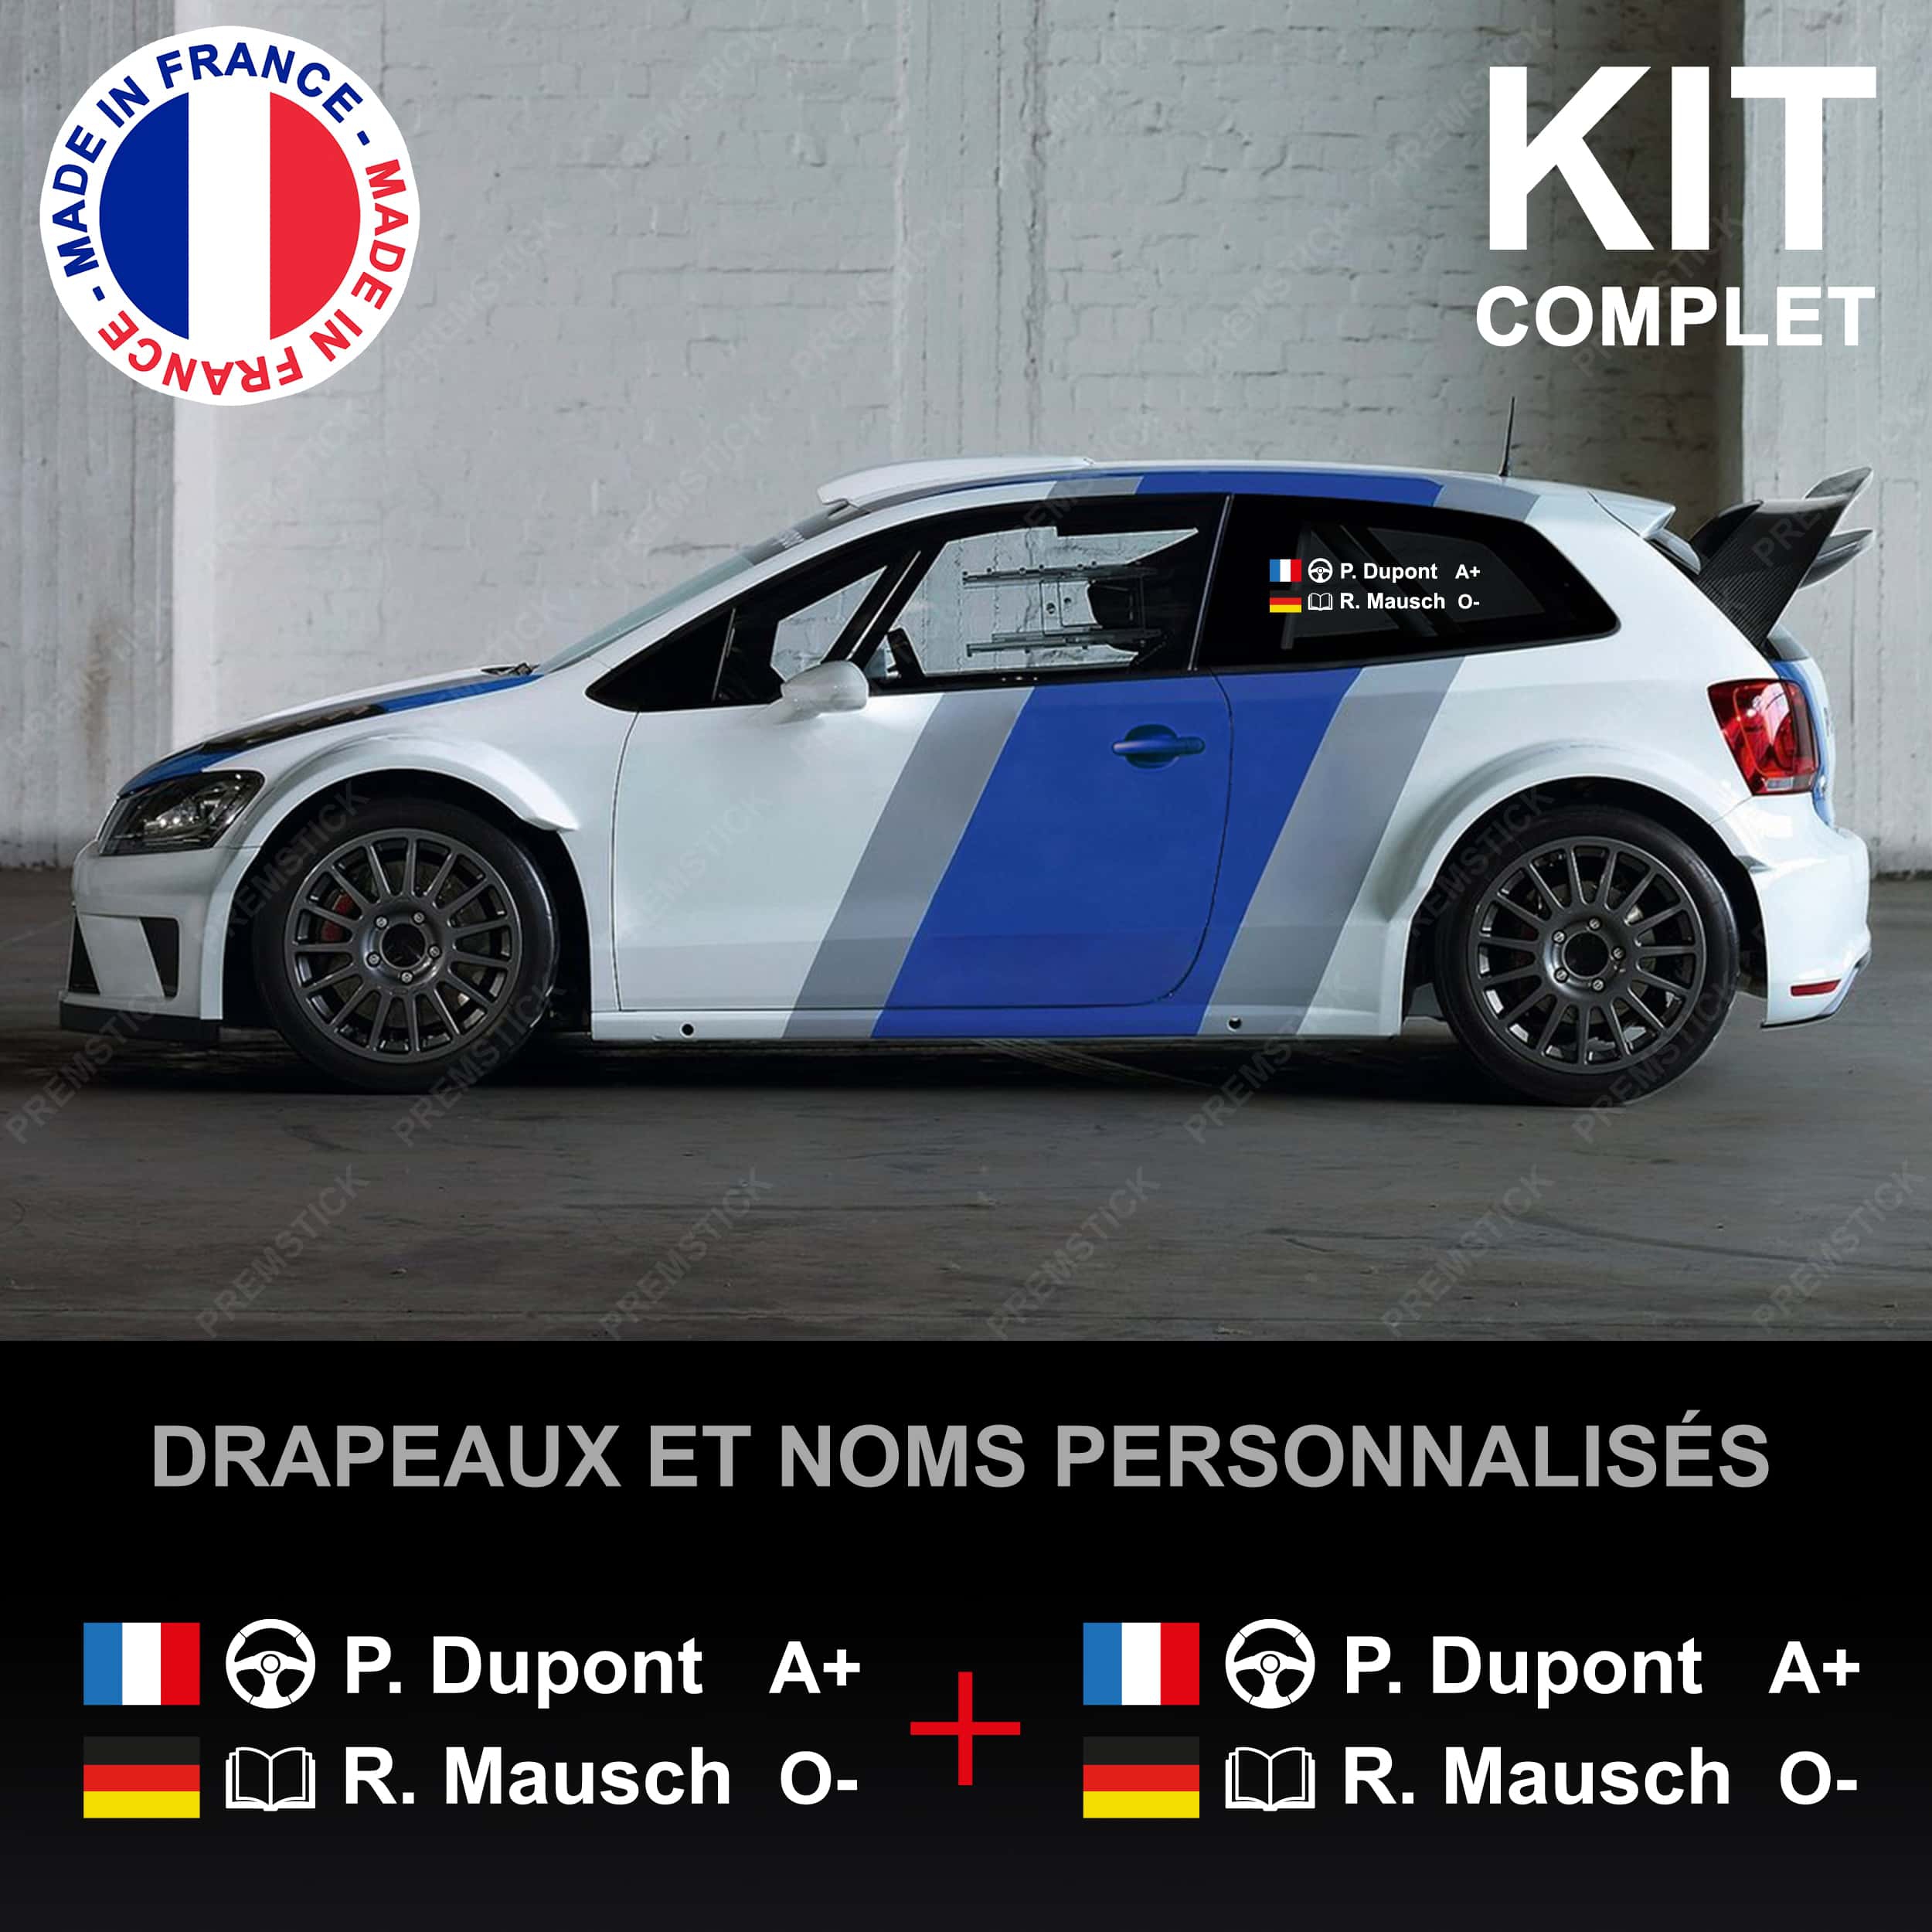 stickers-pilote-copilote-groupe-sanguin-rallye-ref4-nom-drapeau-voiture-auto-racing-course-tuning-ffsa-autocollant-sticker-france-personnalisé-kit-min